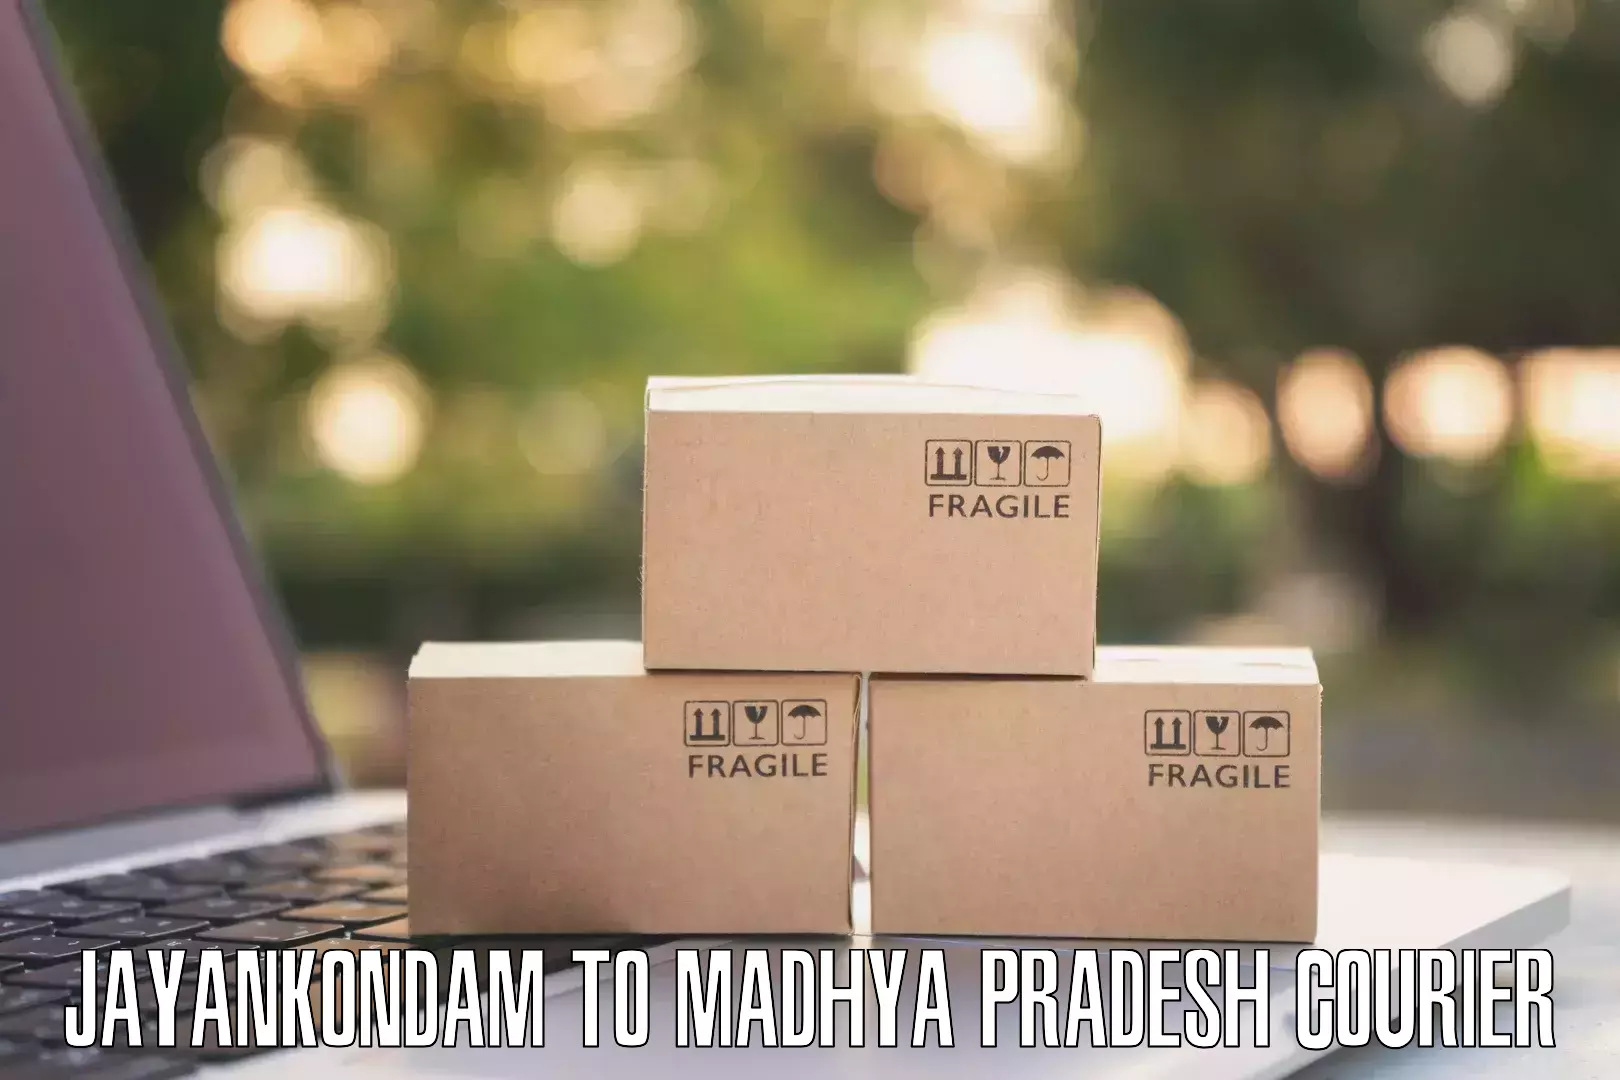 Small business couriers Jayankondam to Mundi